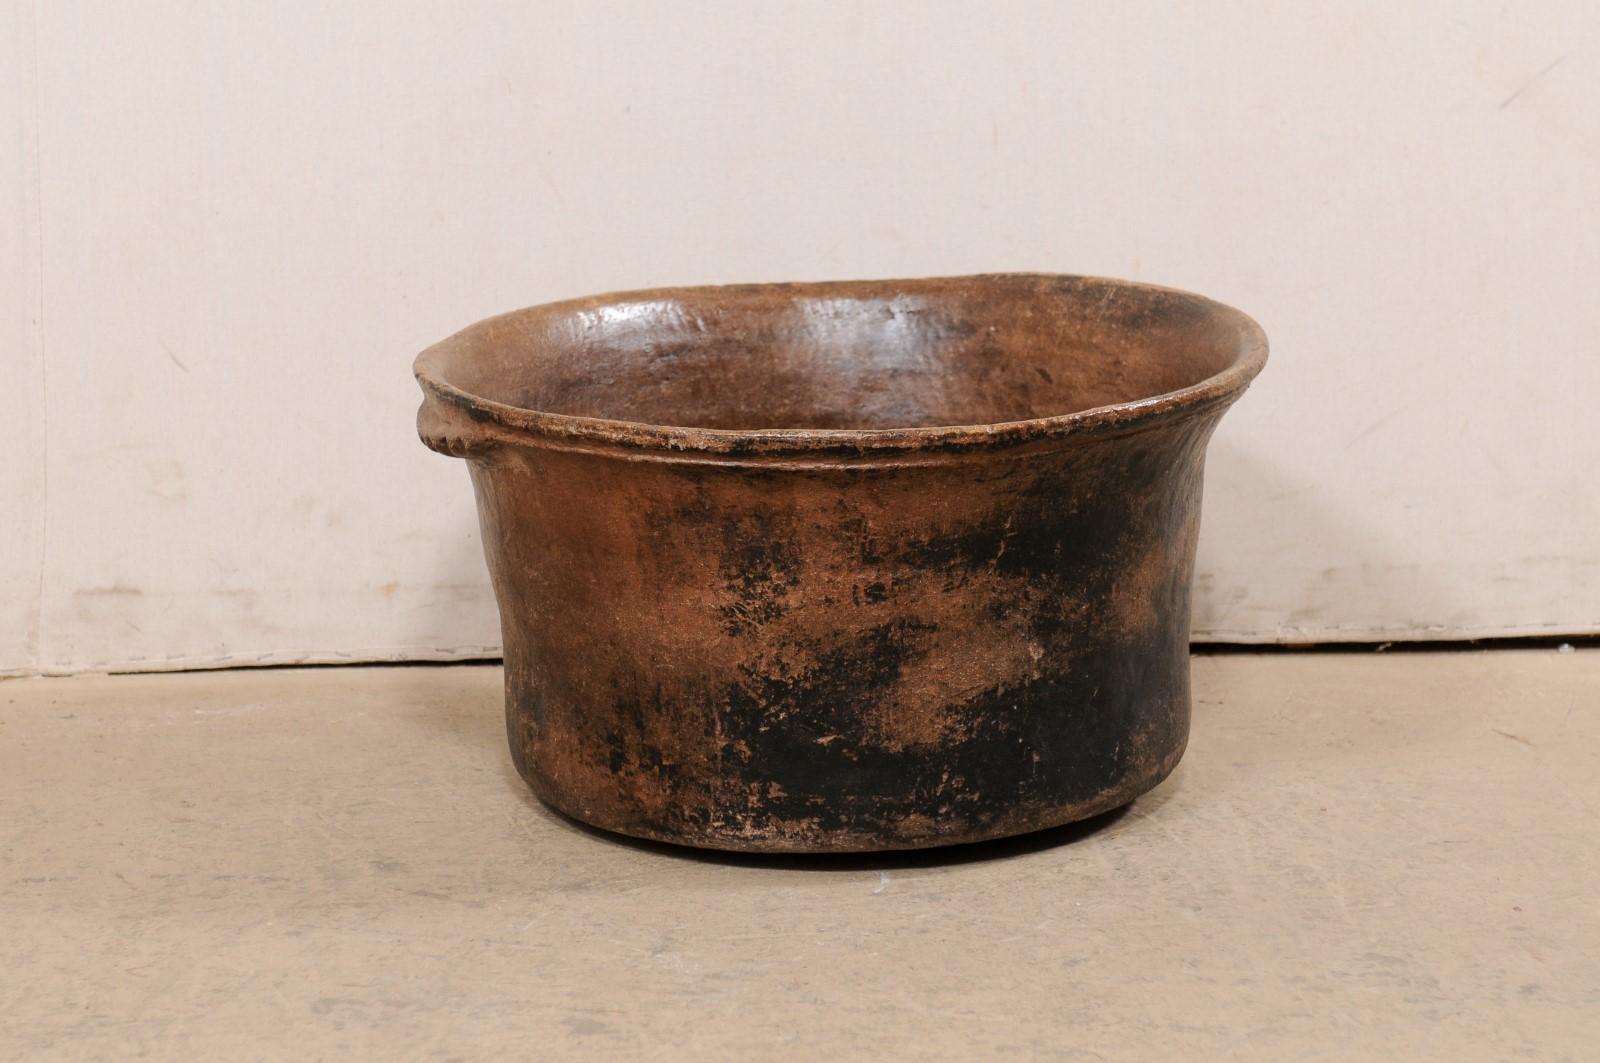 Une marmite coloniale espagnole du début du 20e siècle, Amérique centrale. Ce récipient de cuisson antique a été fabriqué en argile, est de forme ronde et flanqué de deux poignées peu profondes à texture festonnée. L'argile brune chaude a une